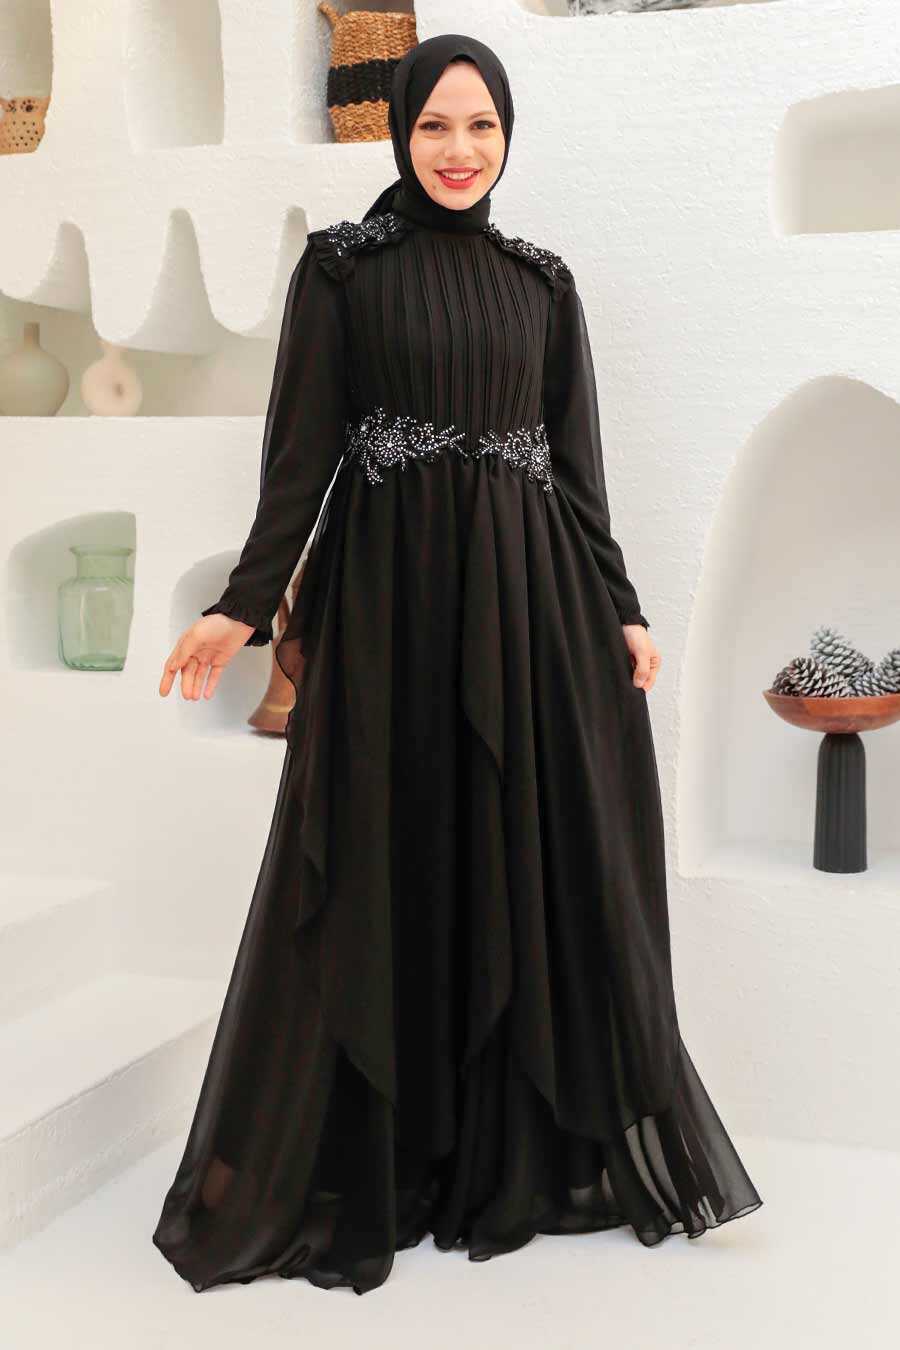 Stylish Black Modest Islamic Clothing Prom Dress 3753S - Neva-style.com